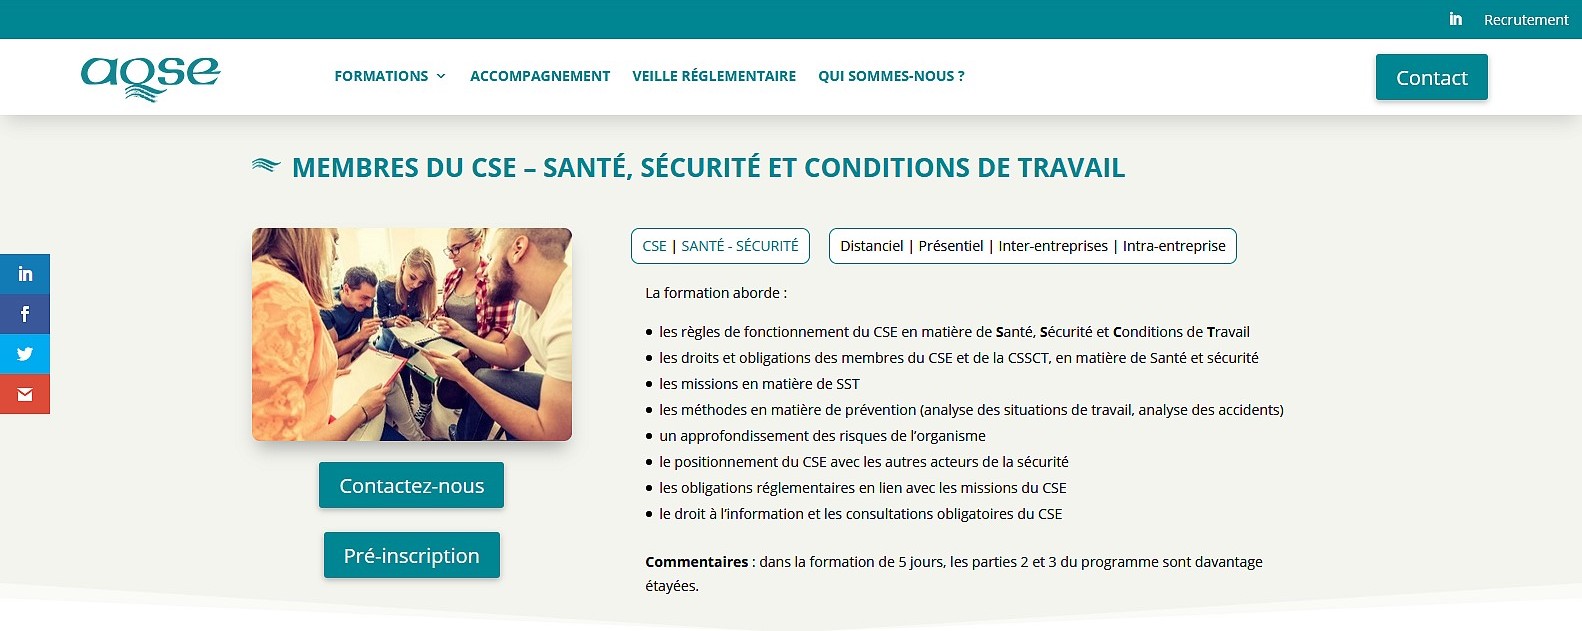 aqse-france.fr page formation CSE et pénibilité au travail - La formation prévention de la pénibilité